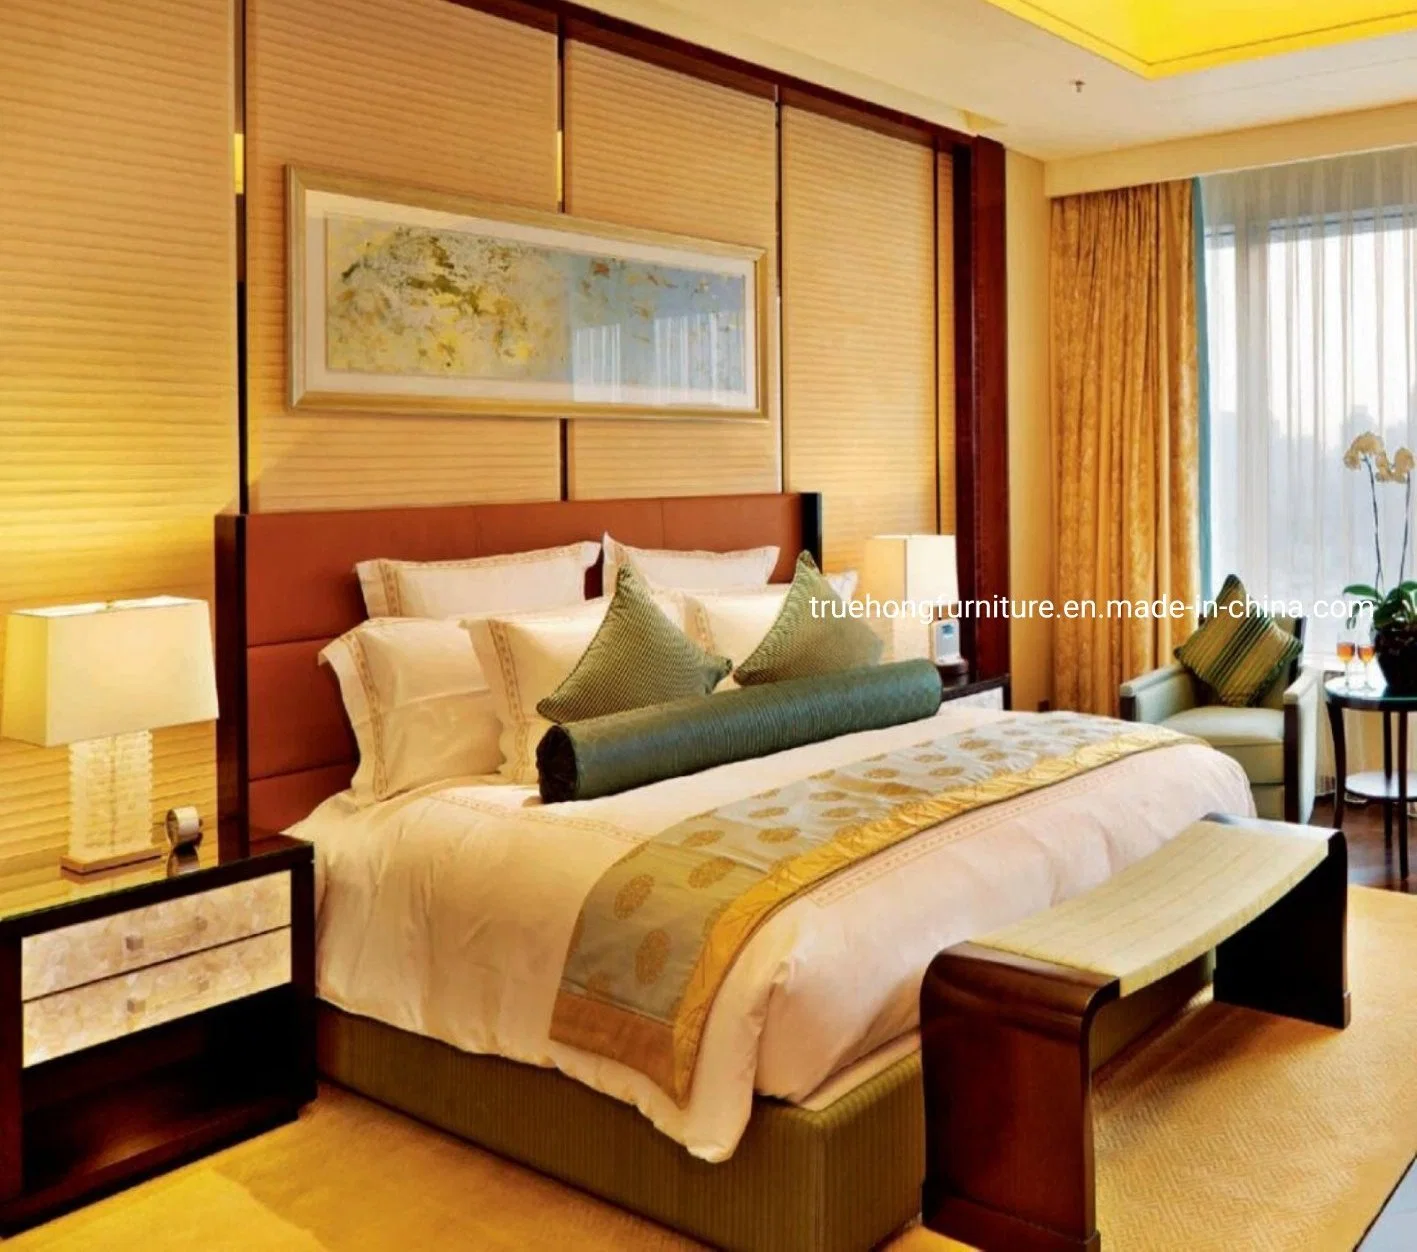 Hospitalidade Hotel mobiliário Top qualidade Atacado Hotel Quarto Set Professional Mobiliário do hotel